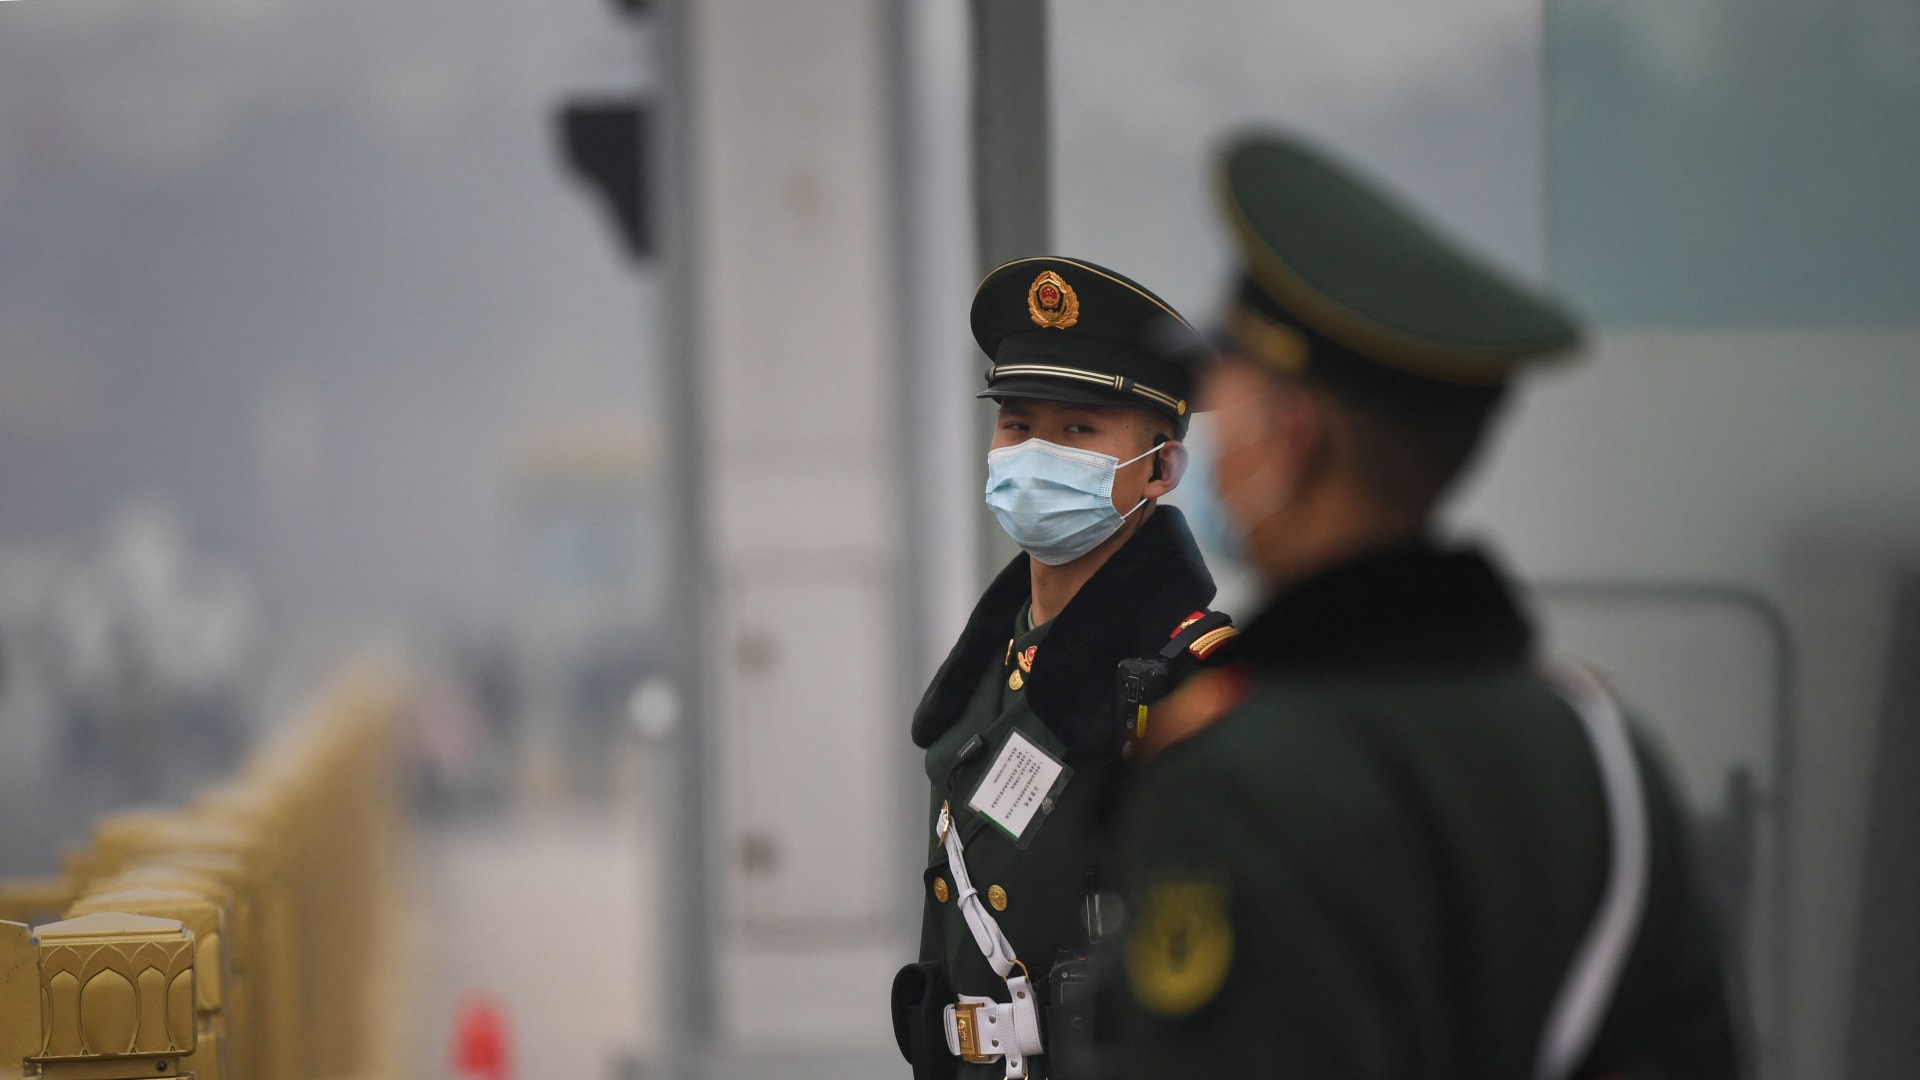 الشرطة الصينية تحقق مع ممثل كوميدي بسبب دعابة عن الجيش